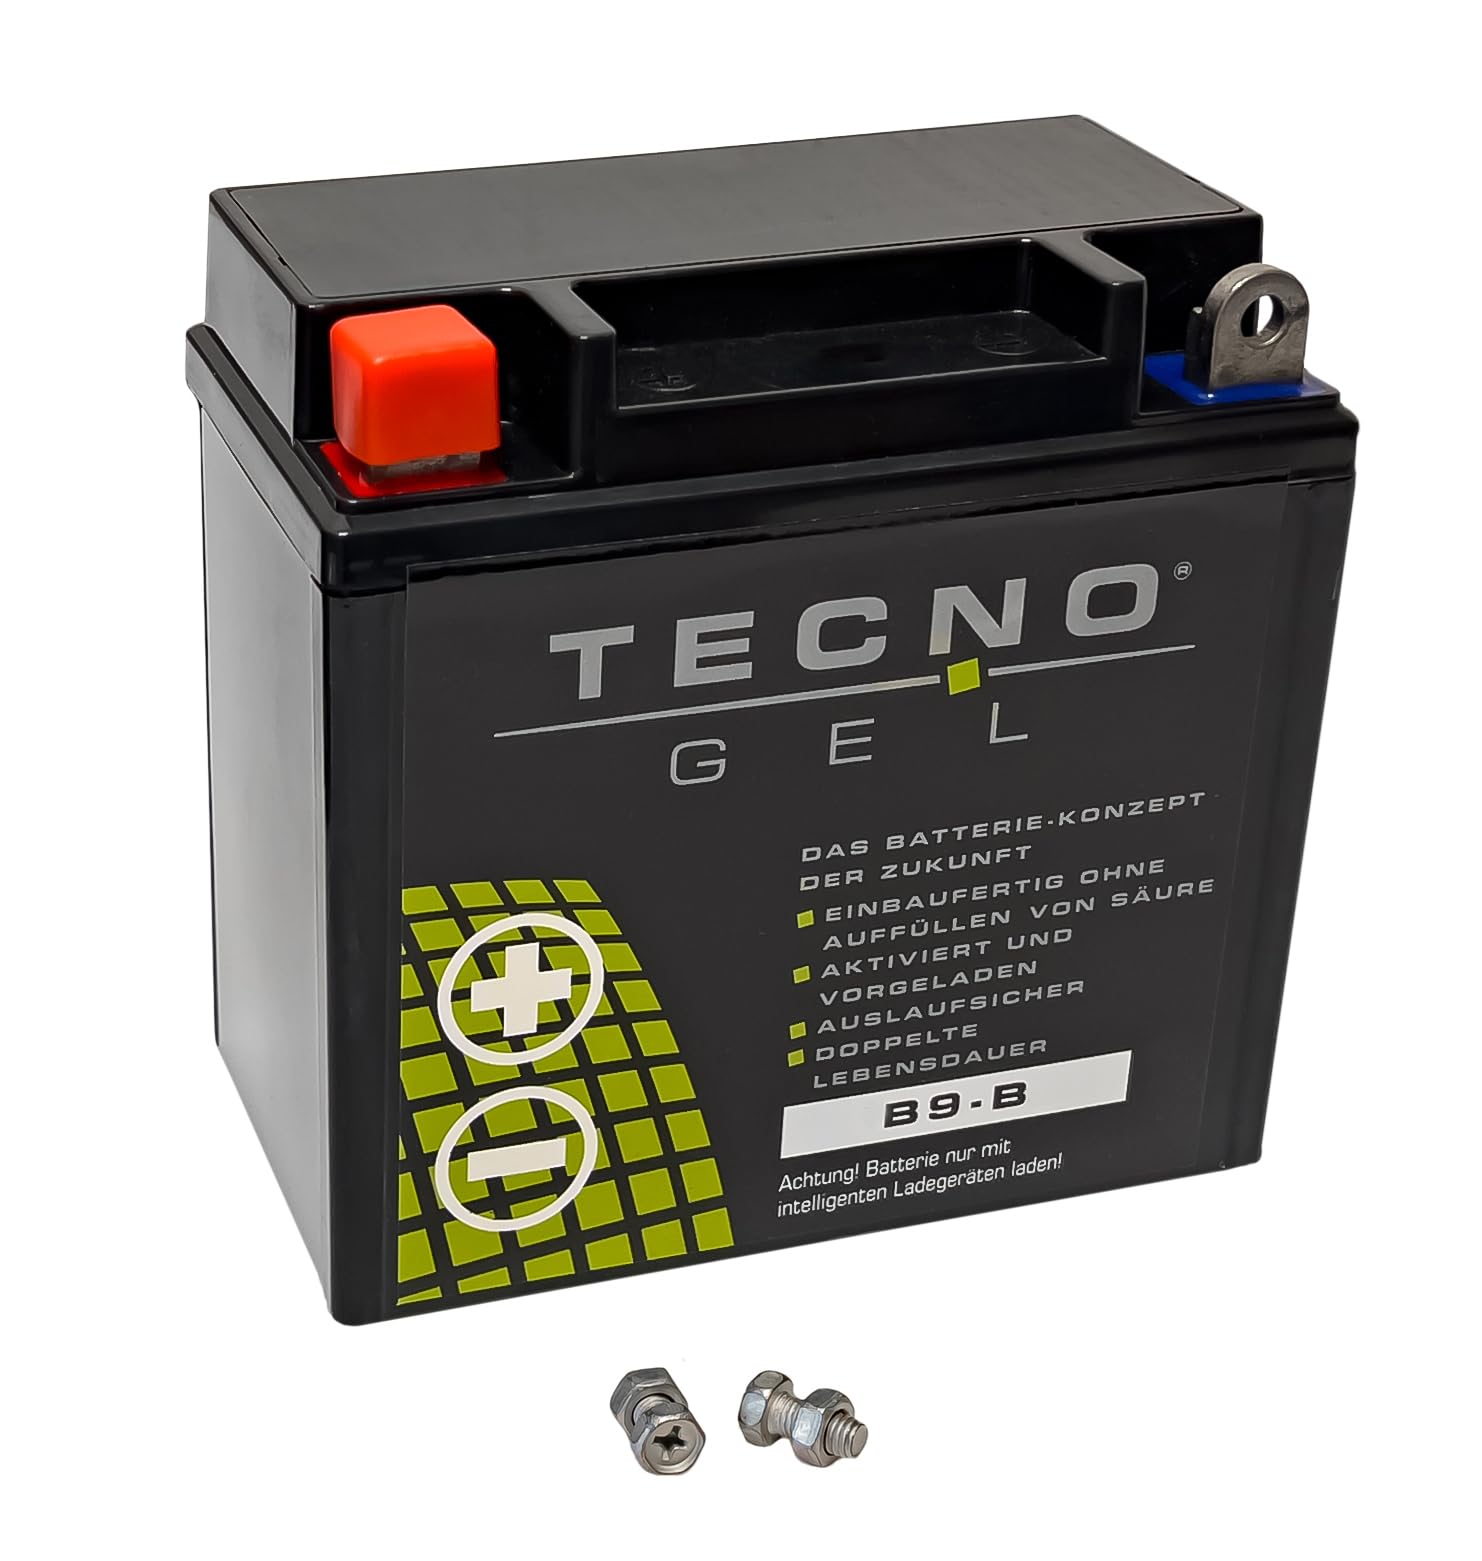 TECNO-GEL Motorrad-Batterie für YB9-B = 12N9-4B1, 12V Gel-Batterie 9Ah (DIN 50914), 135x75x139 mm von Wirth-Federn